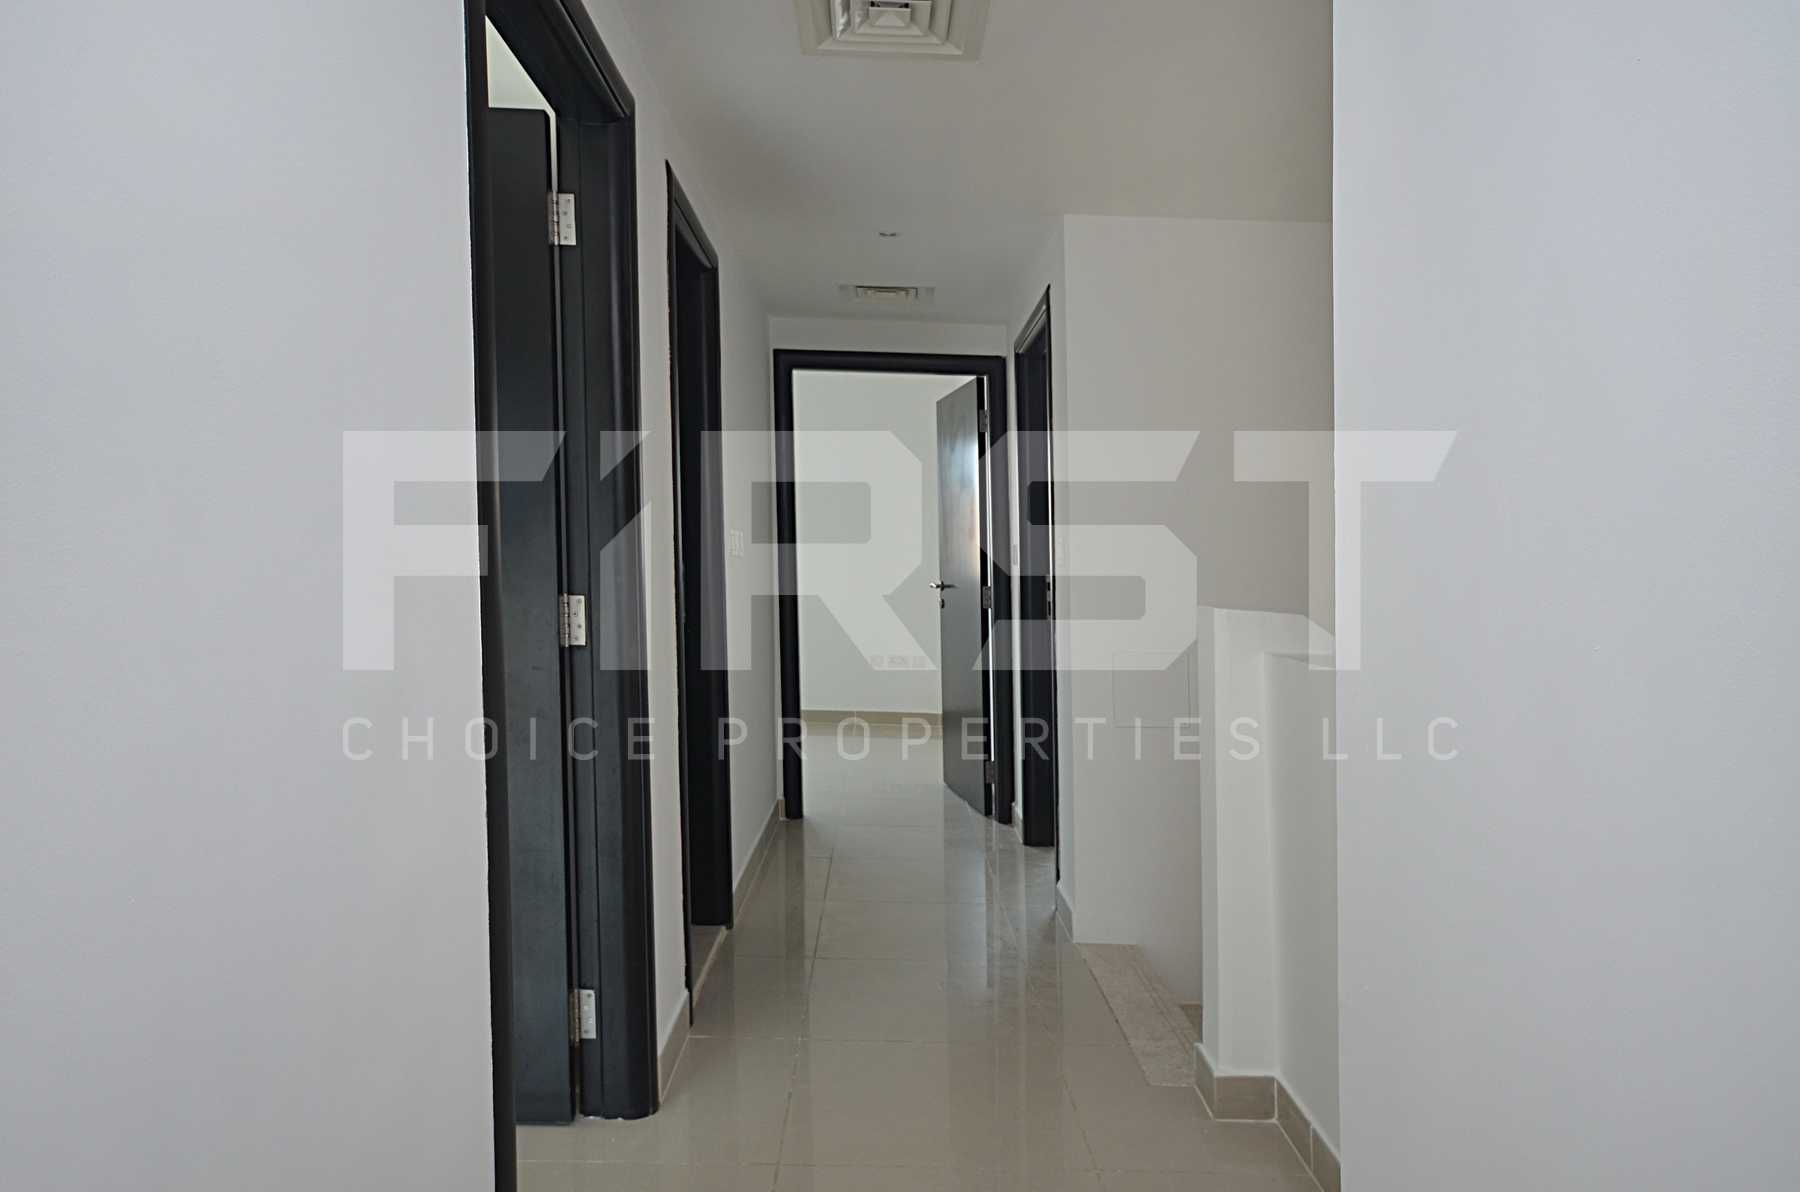 Internal Photo of 4 Bedroom Villa in Al Reef Villas Al Reef Abu Dhabi UAE  2858 sq (30).jpg